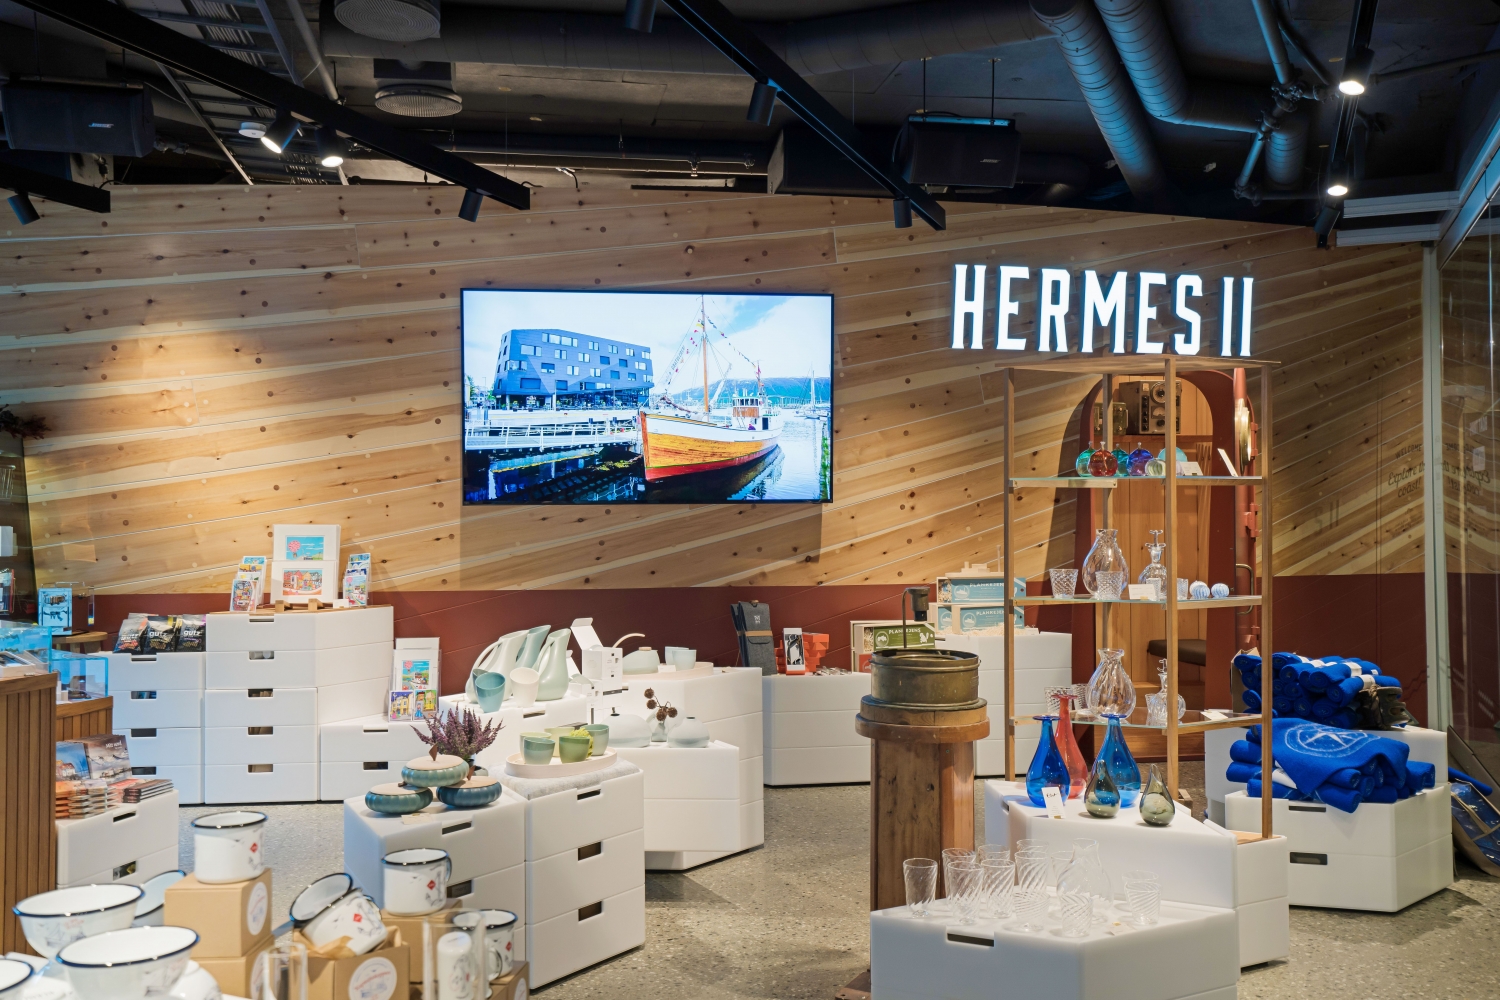 Hermes 2 design butikk i Kystens hus